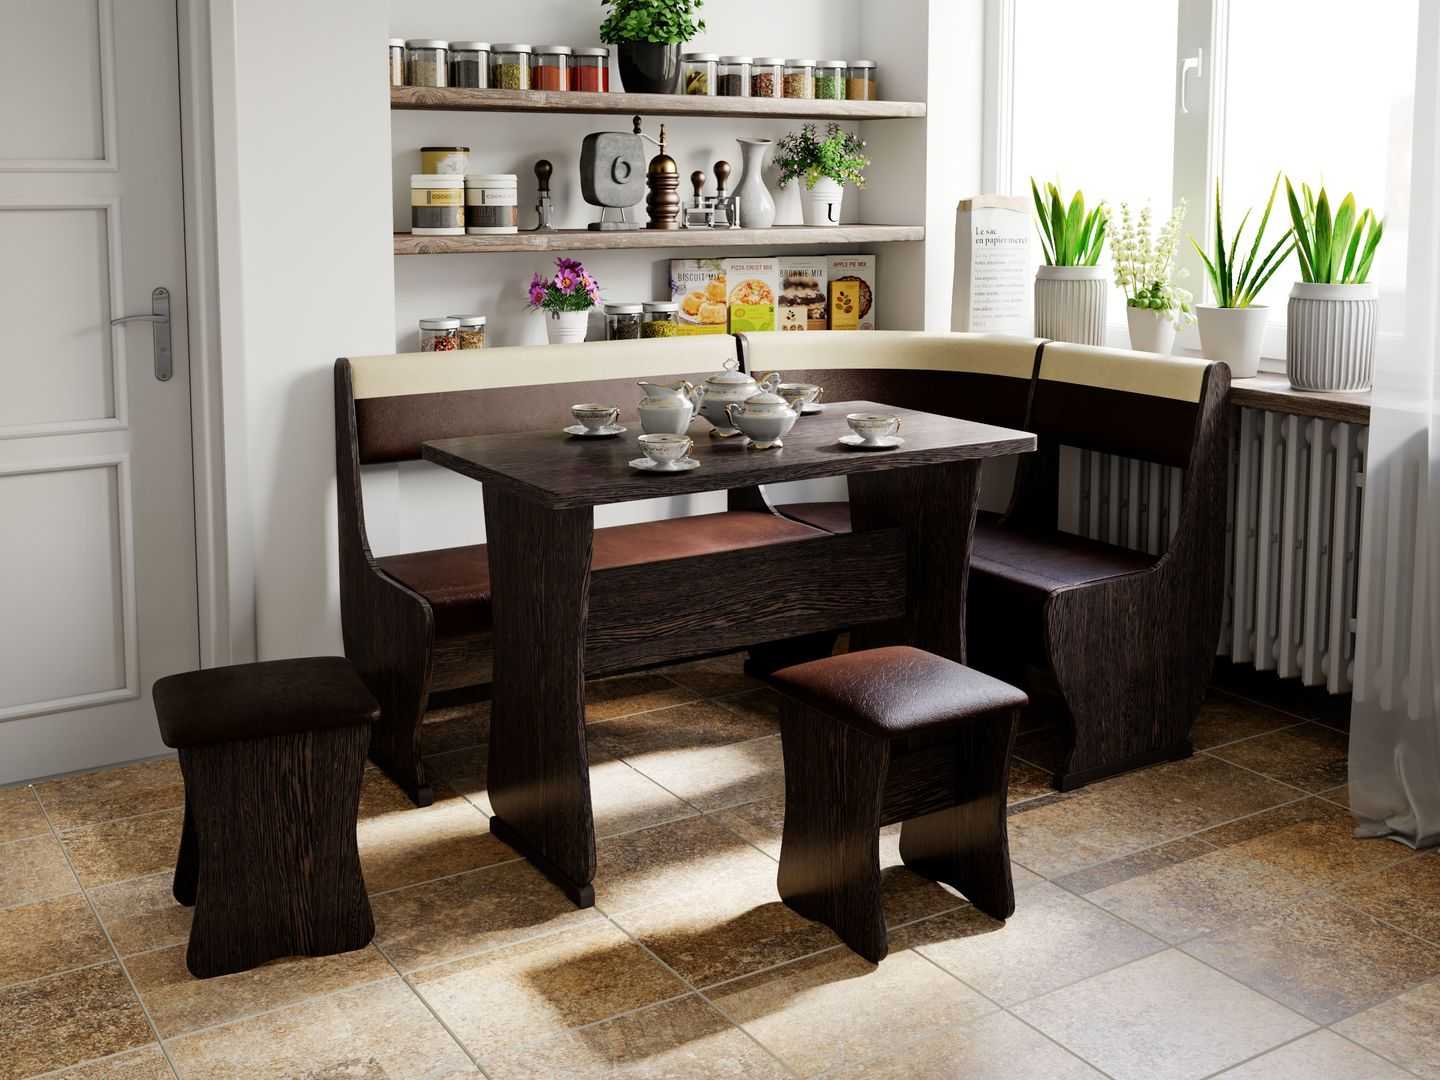 Кухонные столы и стулья для маленькой кухни: как выбрать нужную модель?